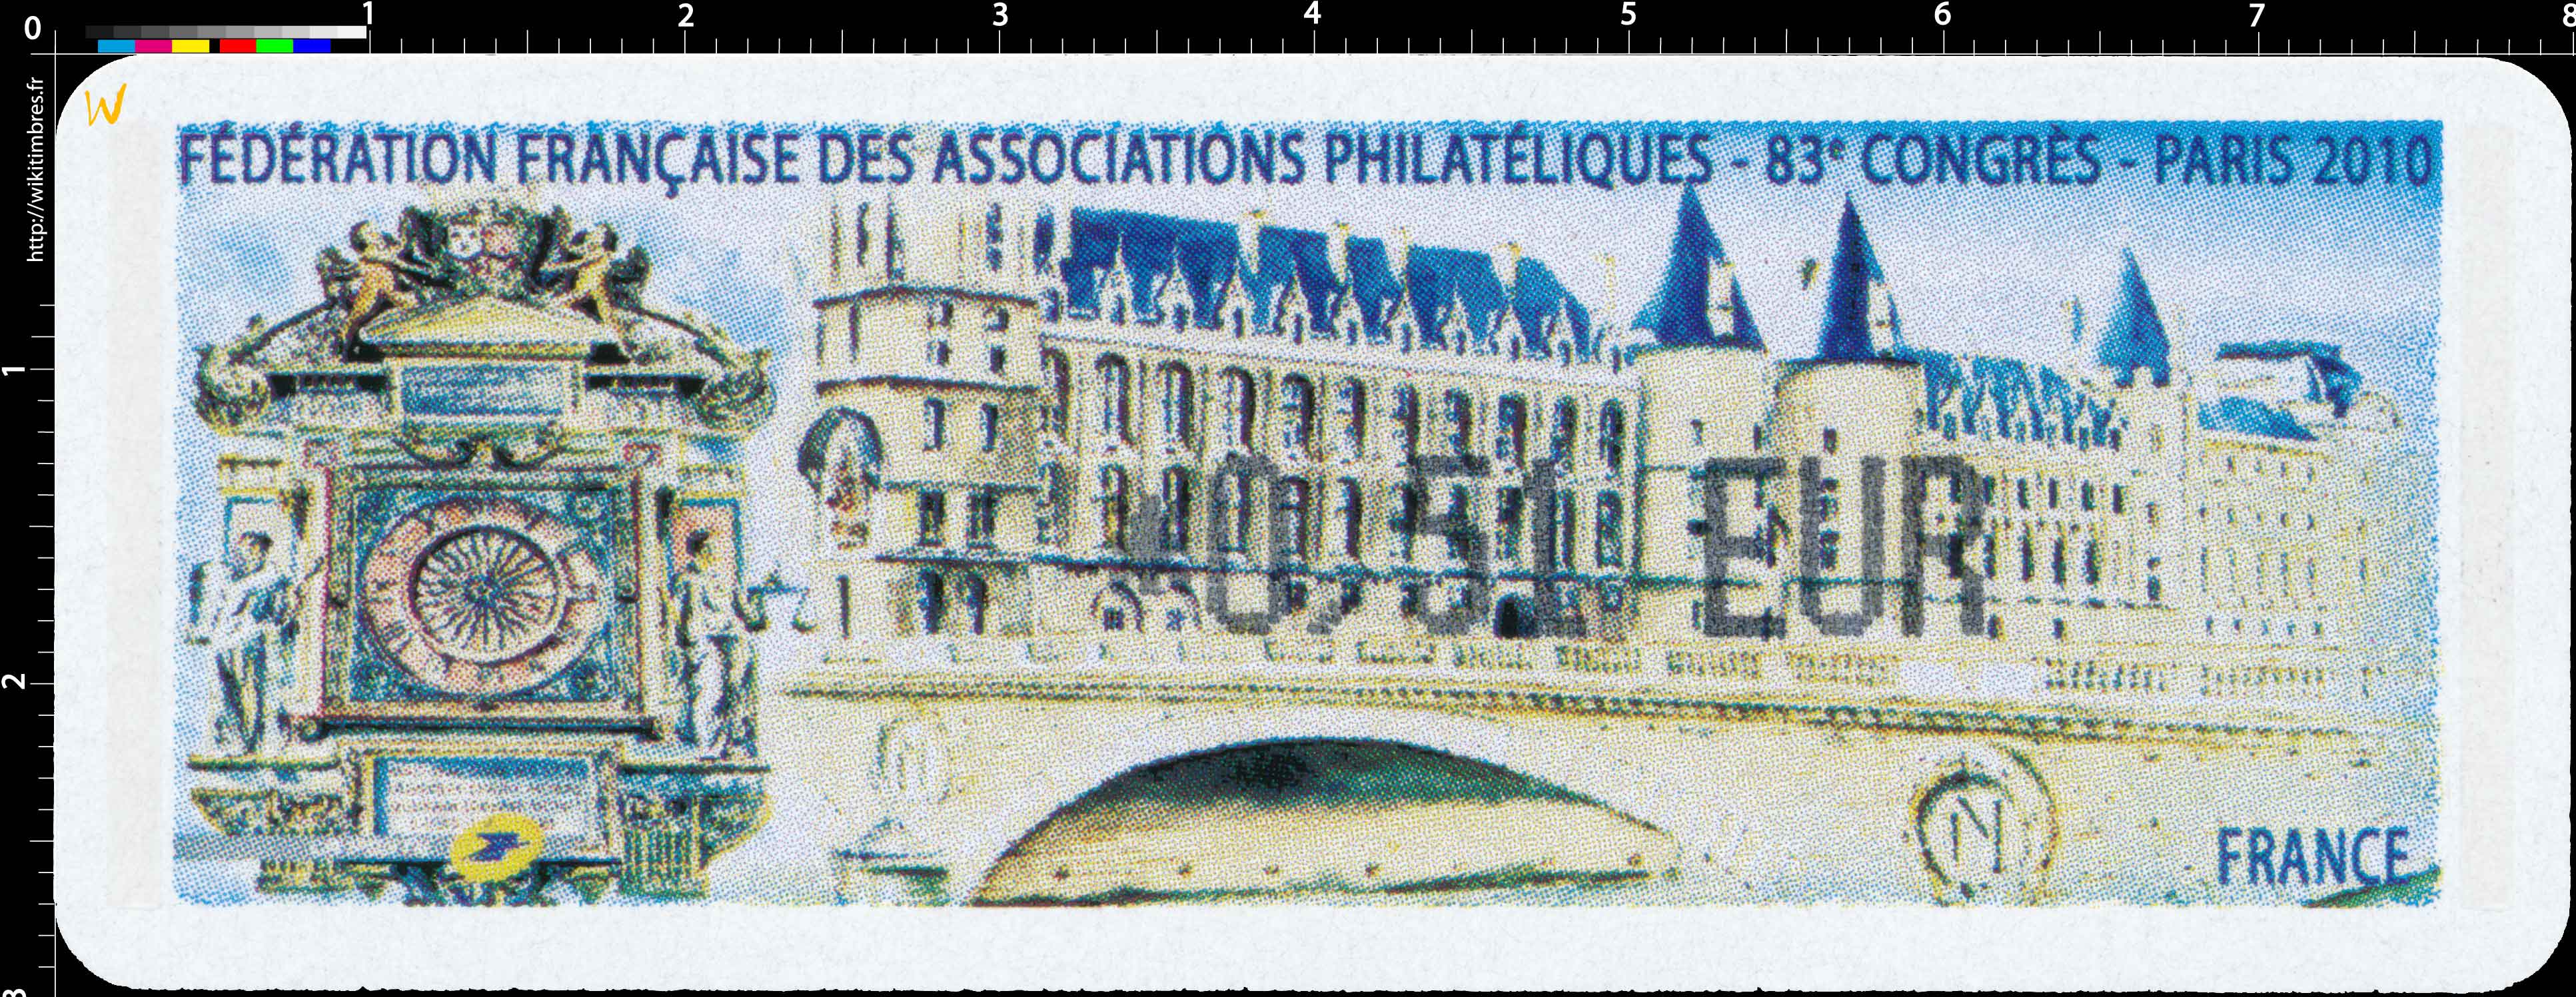 Fédération françaises des associations philatéliques 83e congrès Paris 2010